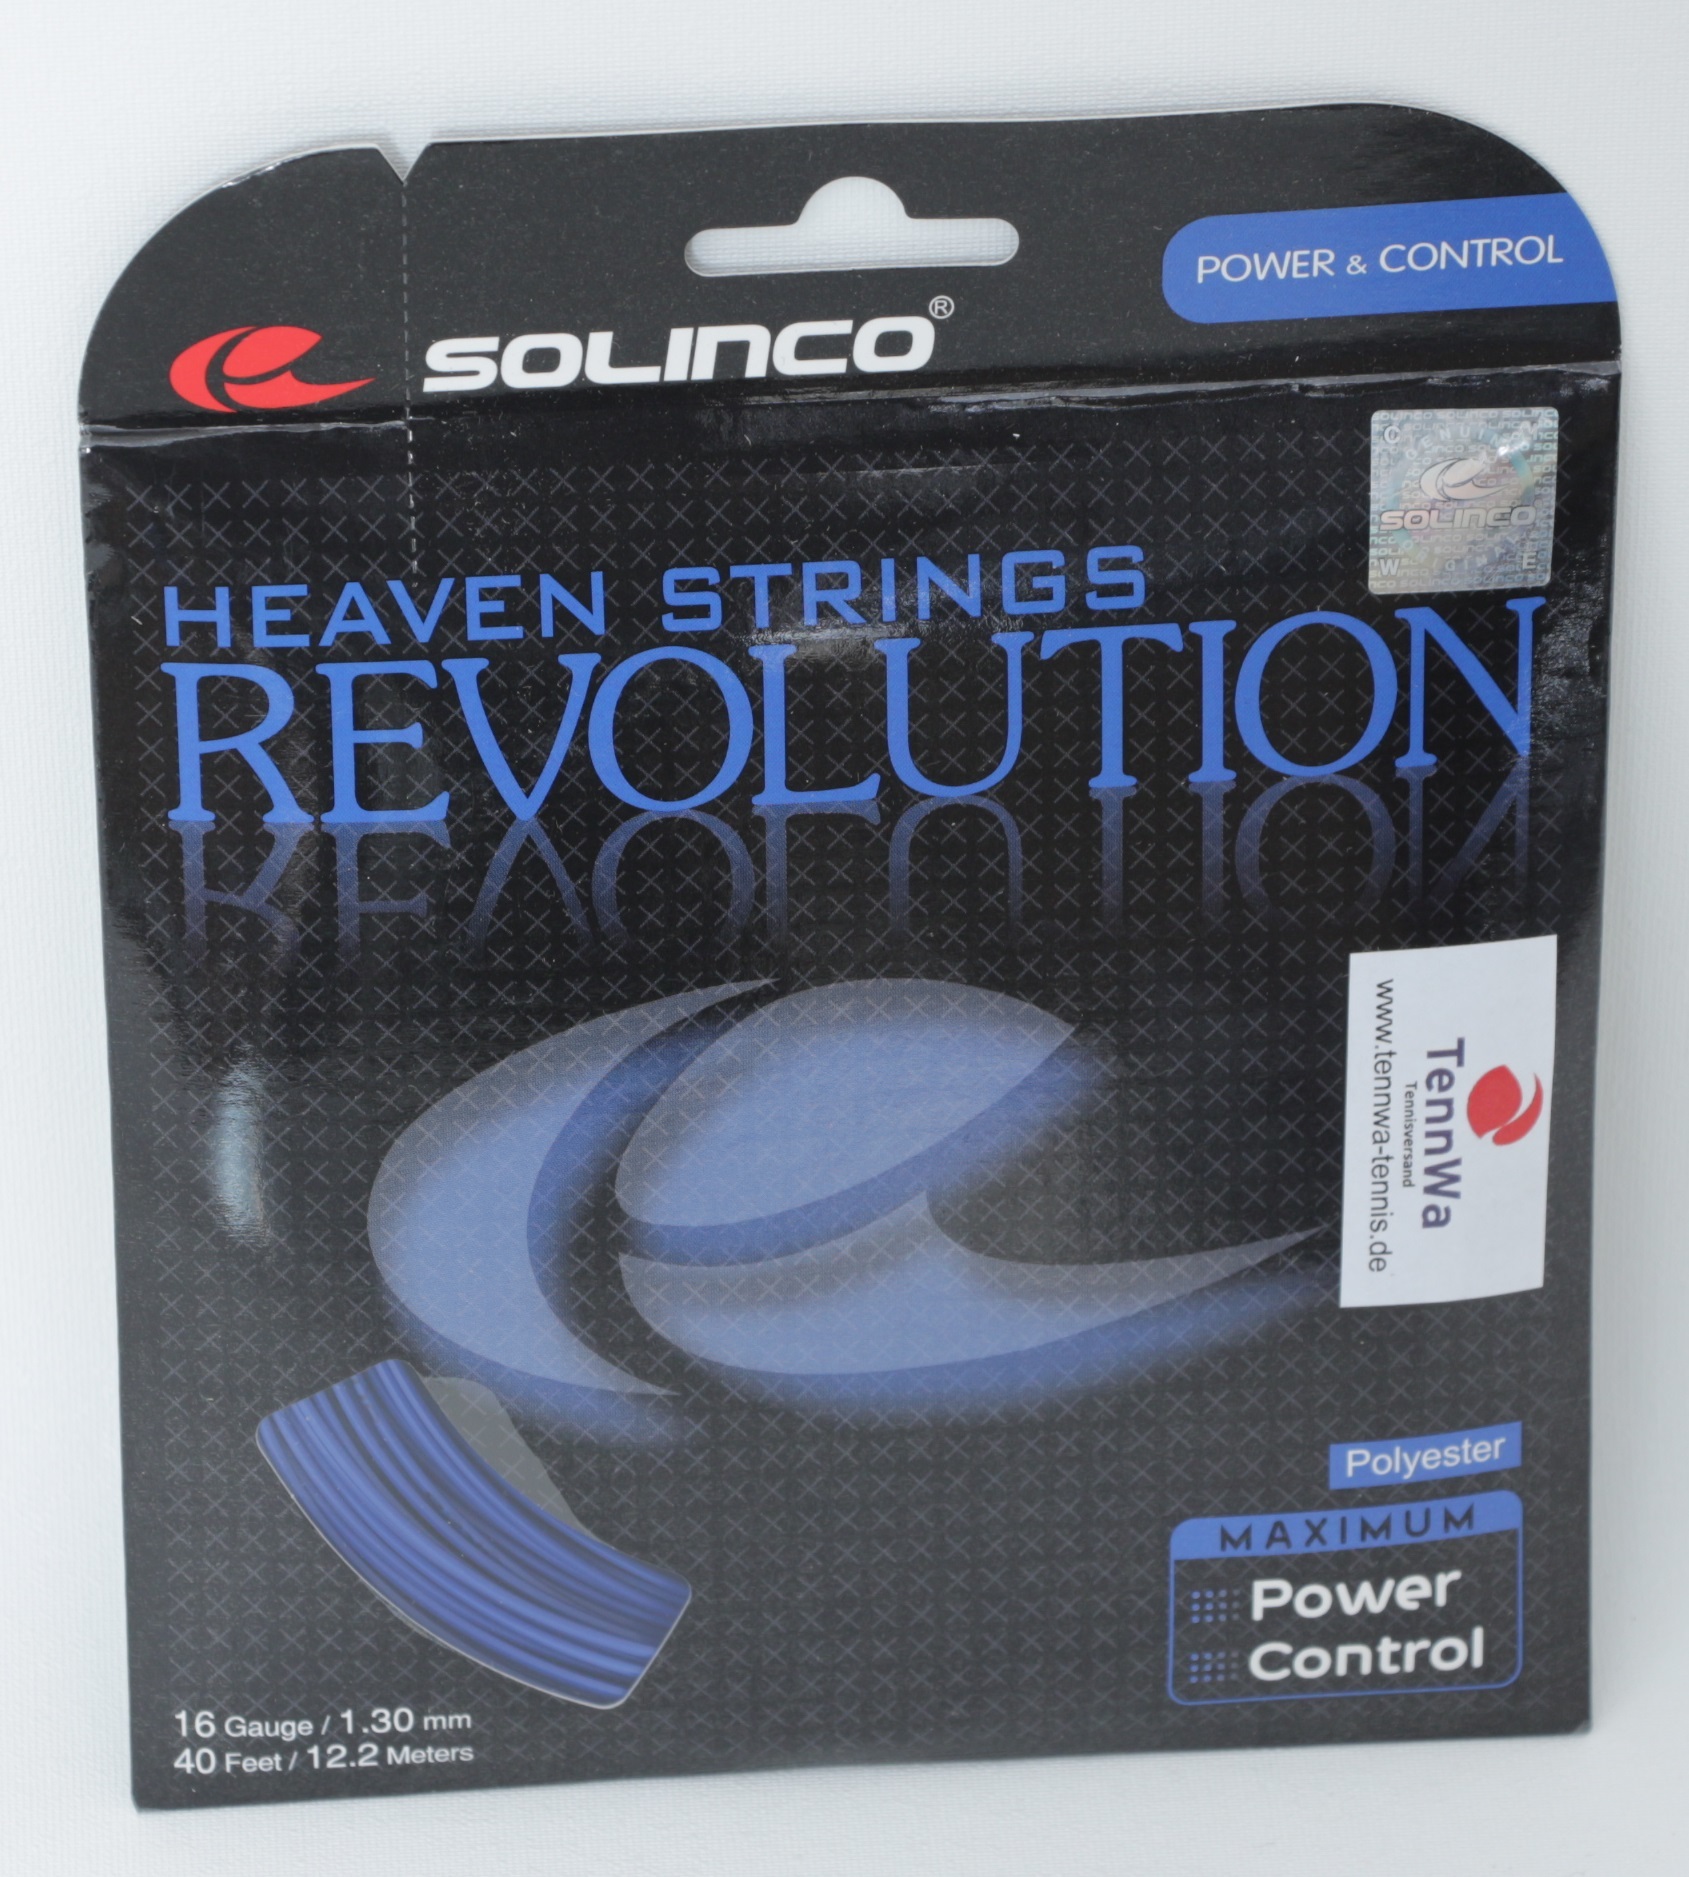 Solinco Revolution 12,2m